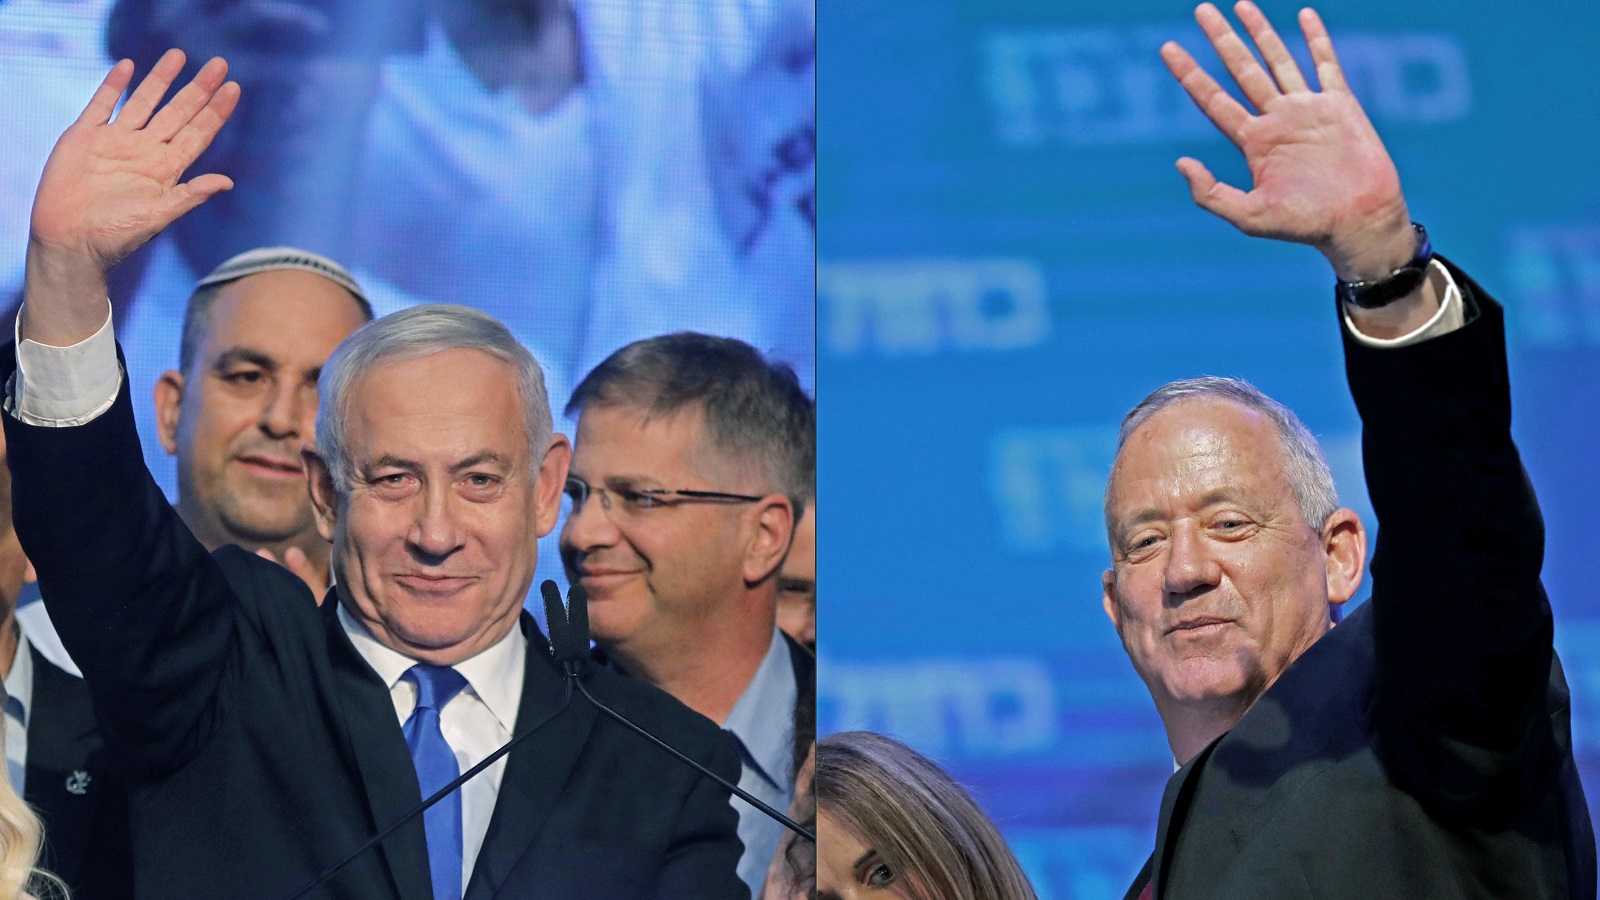 إسرائيل في ربع الساعة الآخير:الانتخابات أقرب من الحكومة